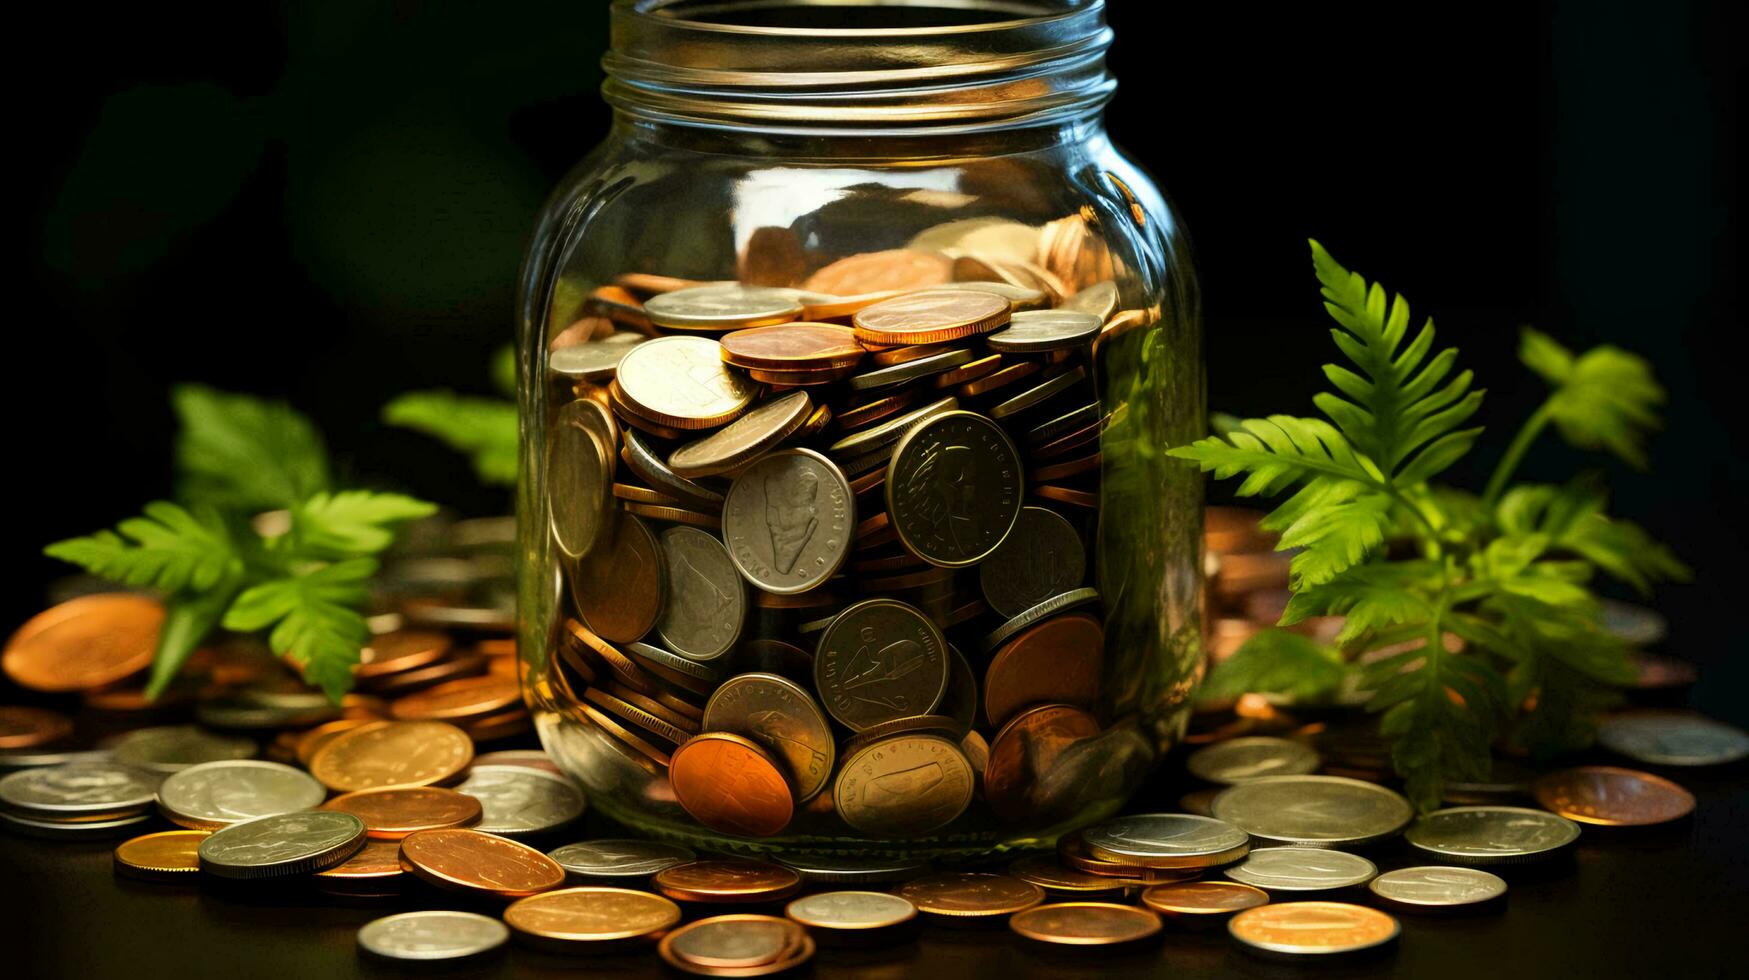 vidro jarra com moedas. conceito do finança economia investimento e acumulação do dinheiro foto